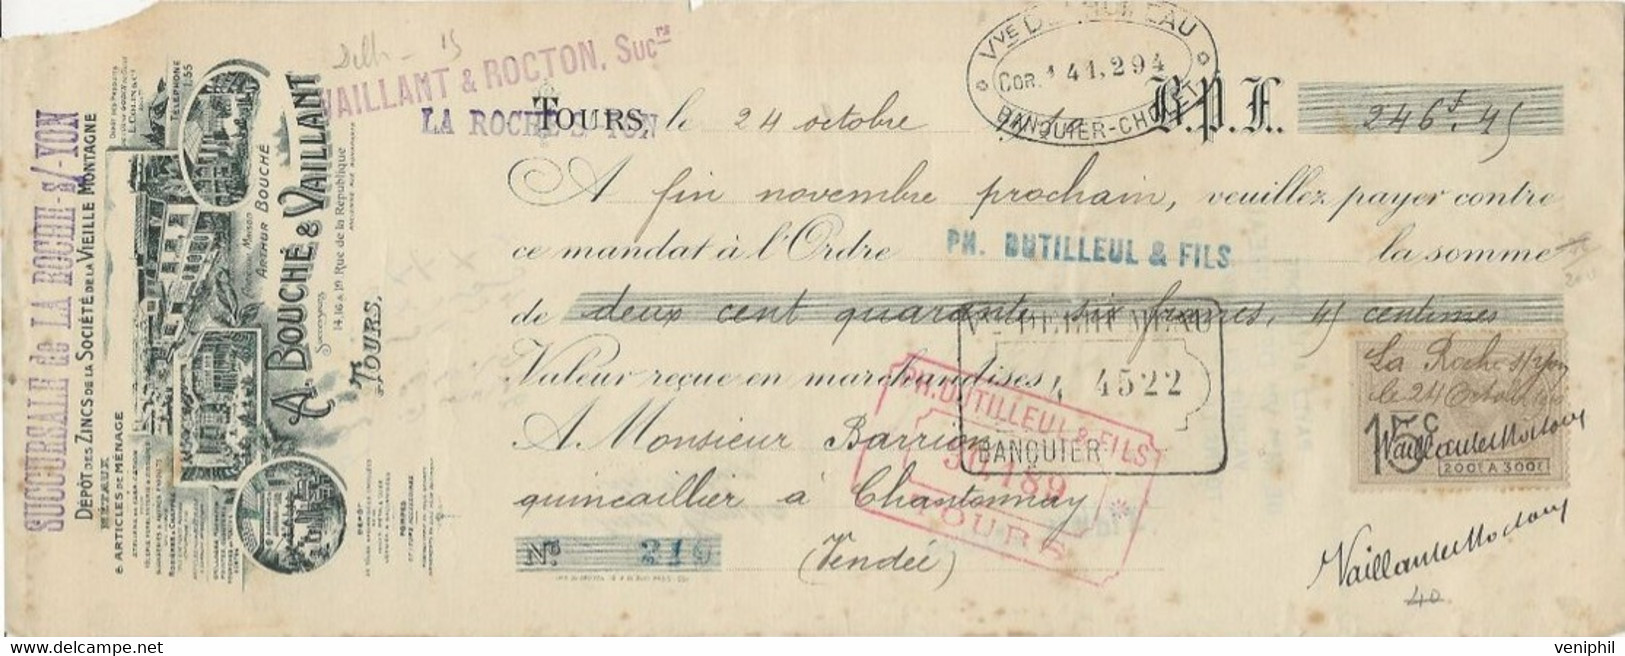 LETTRE DE CHANGE - A BOUCHE ET VAILLANT -TOURS - DEPOT DES ZINCS DE LA SOCIETE VIEILLE MONTAGNE -1910 - Cambiali